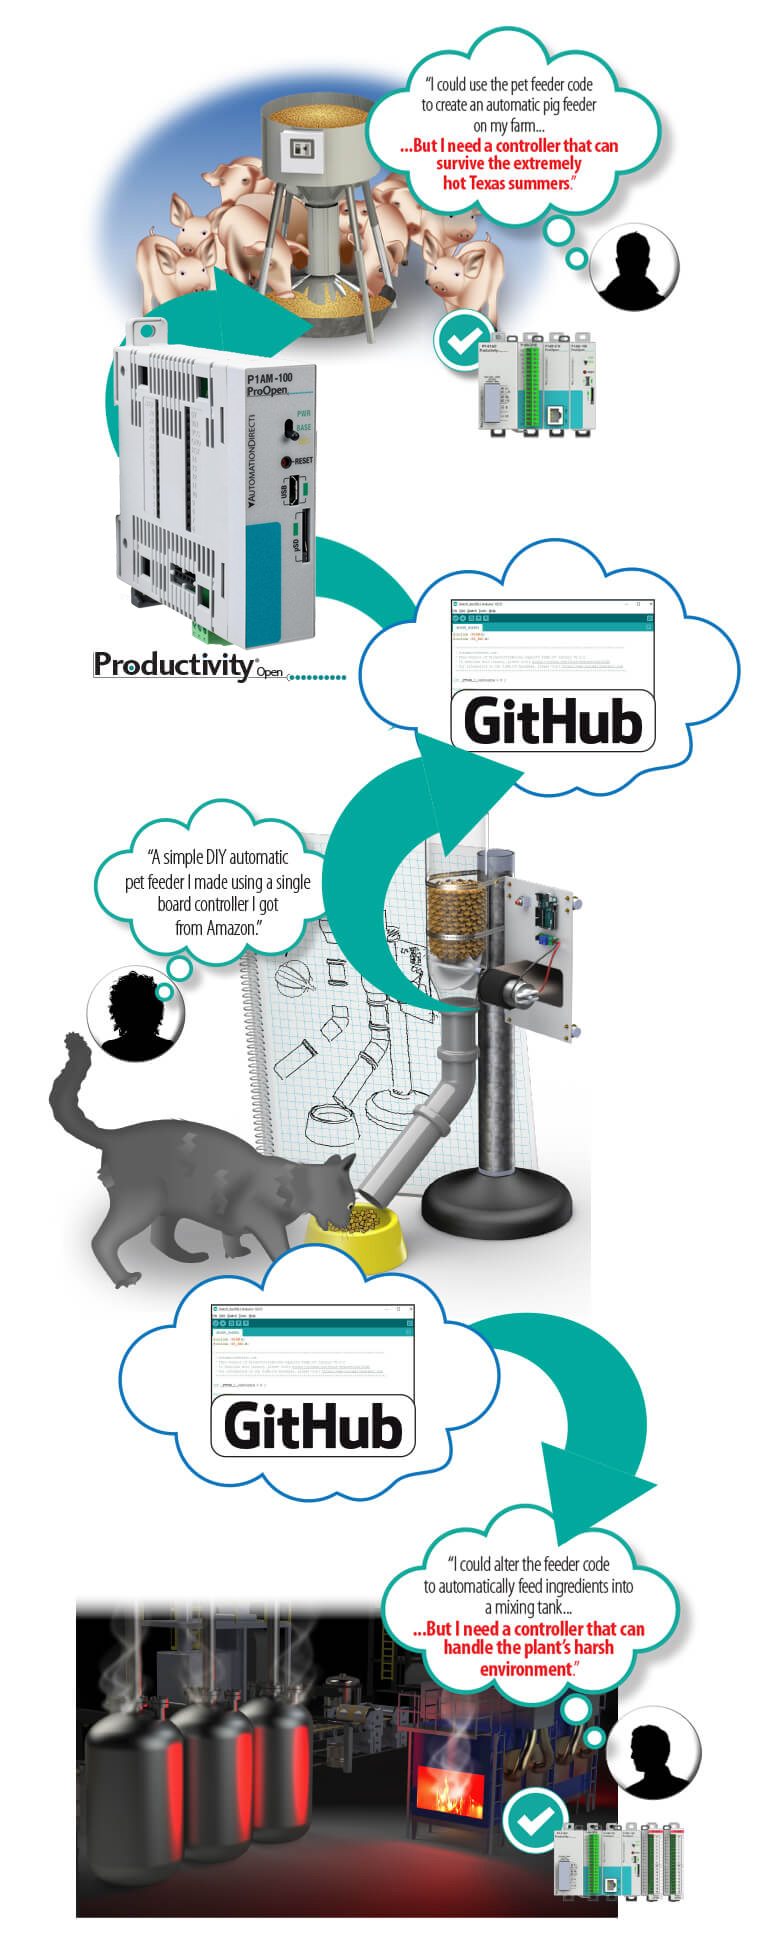 Github and ProductivityOpen